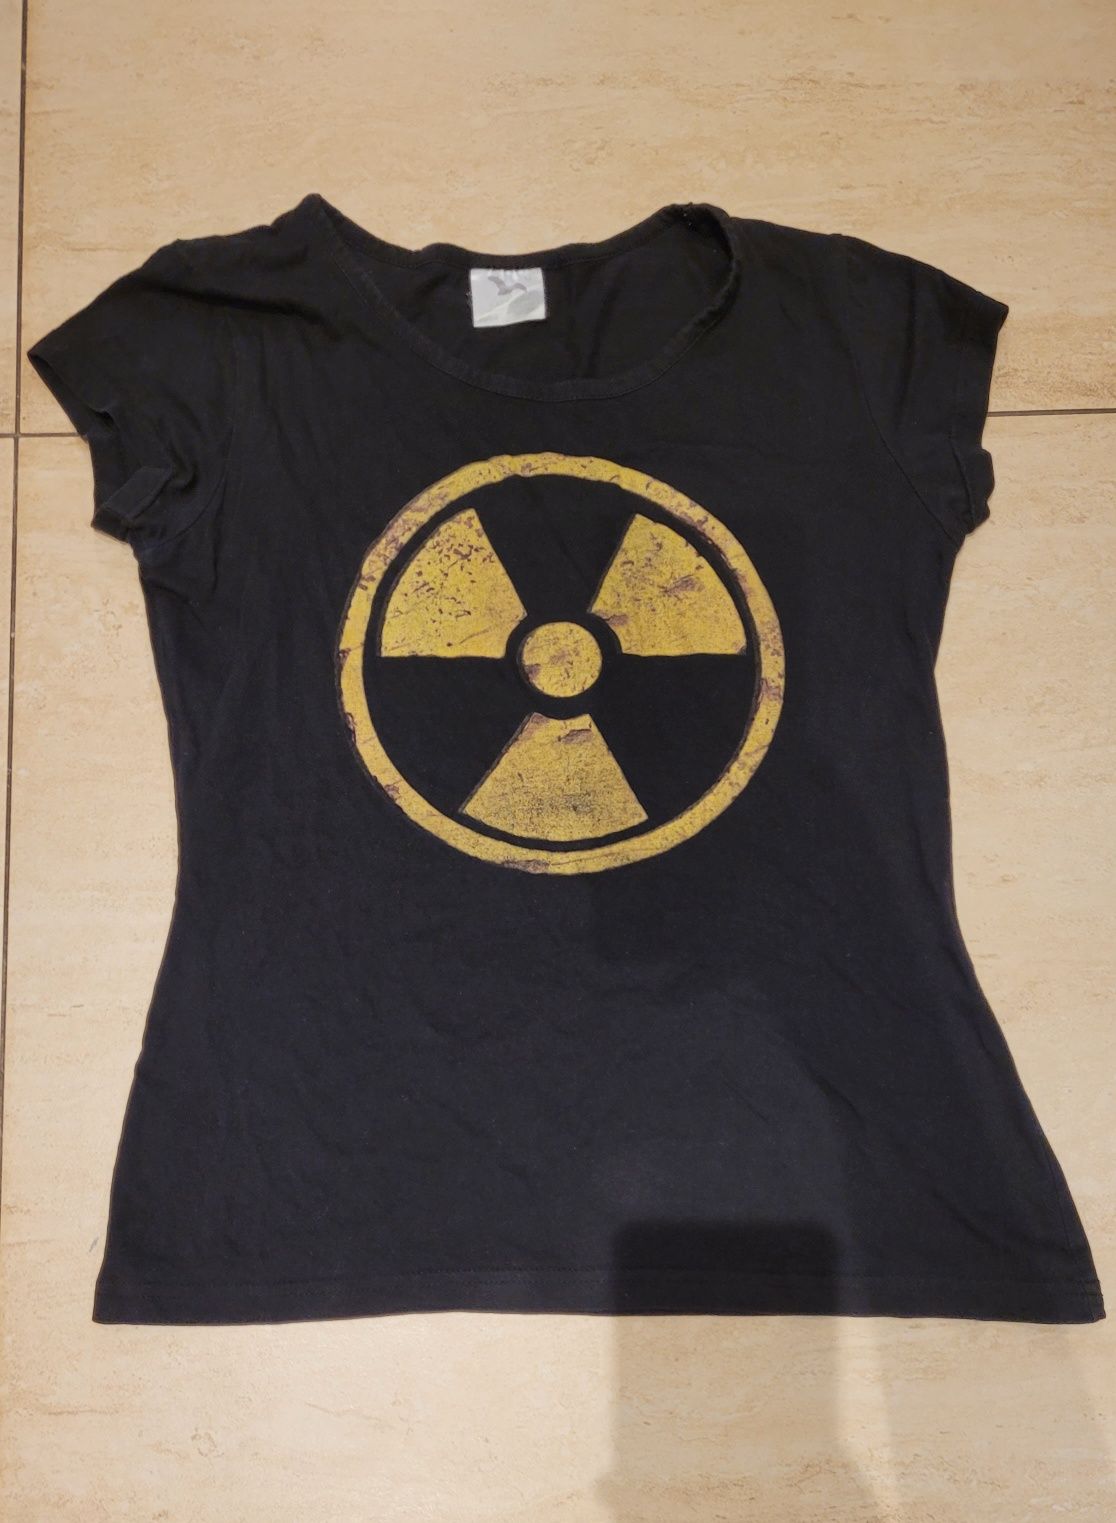 Radioaktywna koszulka - M jak S - promieniotwórczość